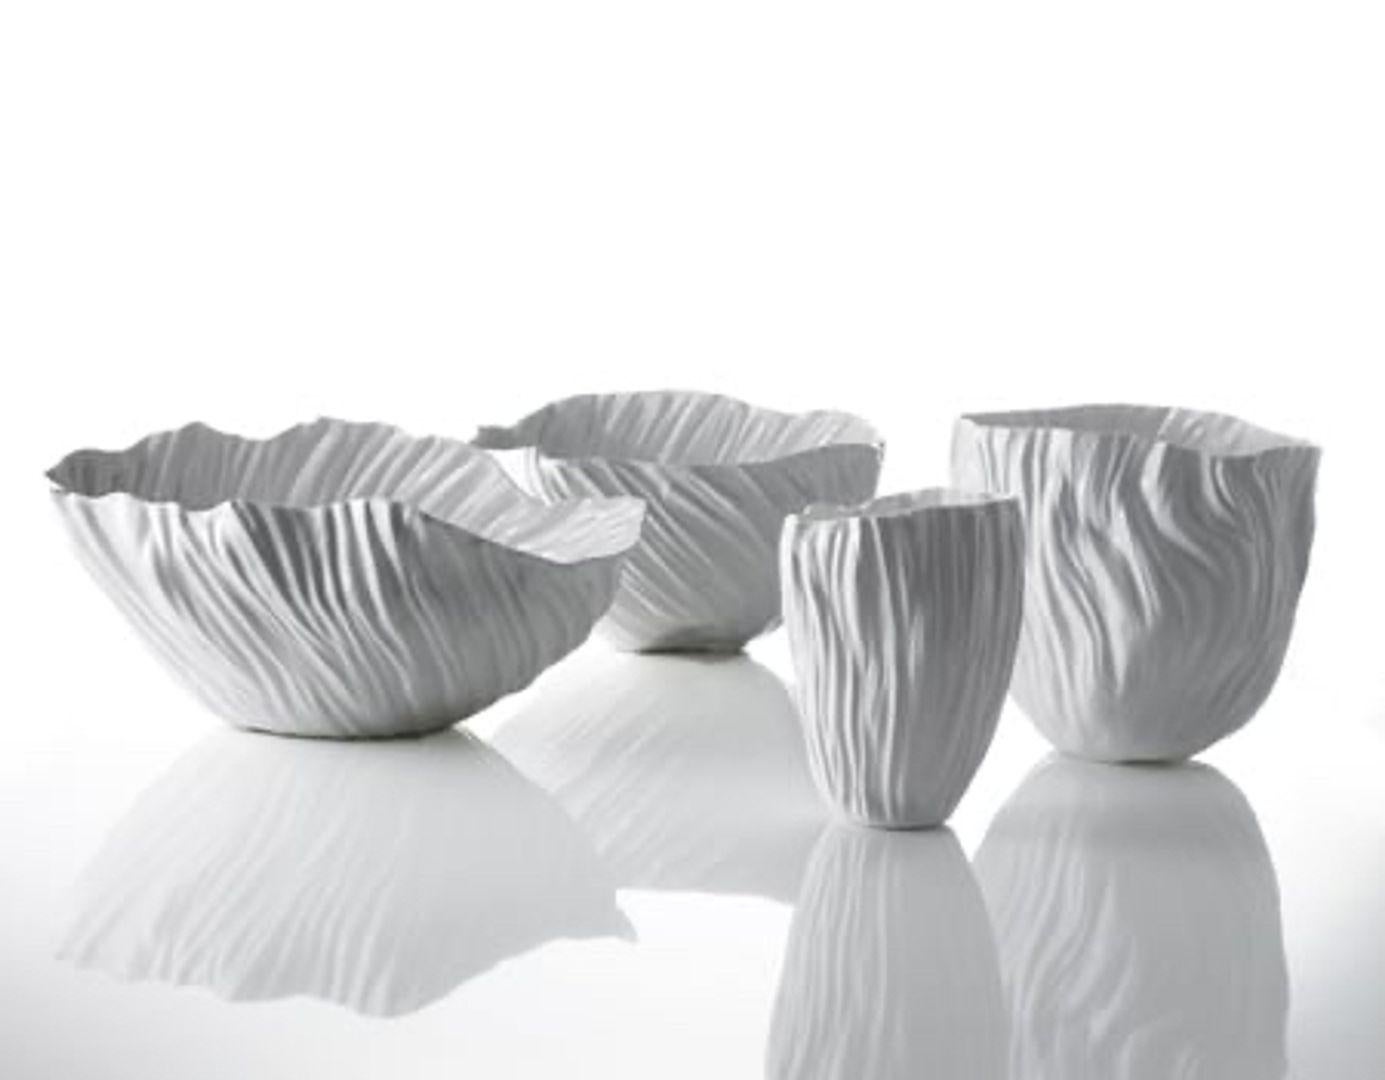 Un service de table en porcelaine blanche Bone China conçu par l'artiste et designer Xie Dong qui a revisité, de manière poétique, le travail de la céramique traditionnelle chinoise.La porcelaine est traitée pour obtenir une épaisseur très fine :